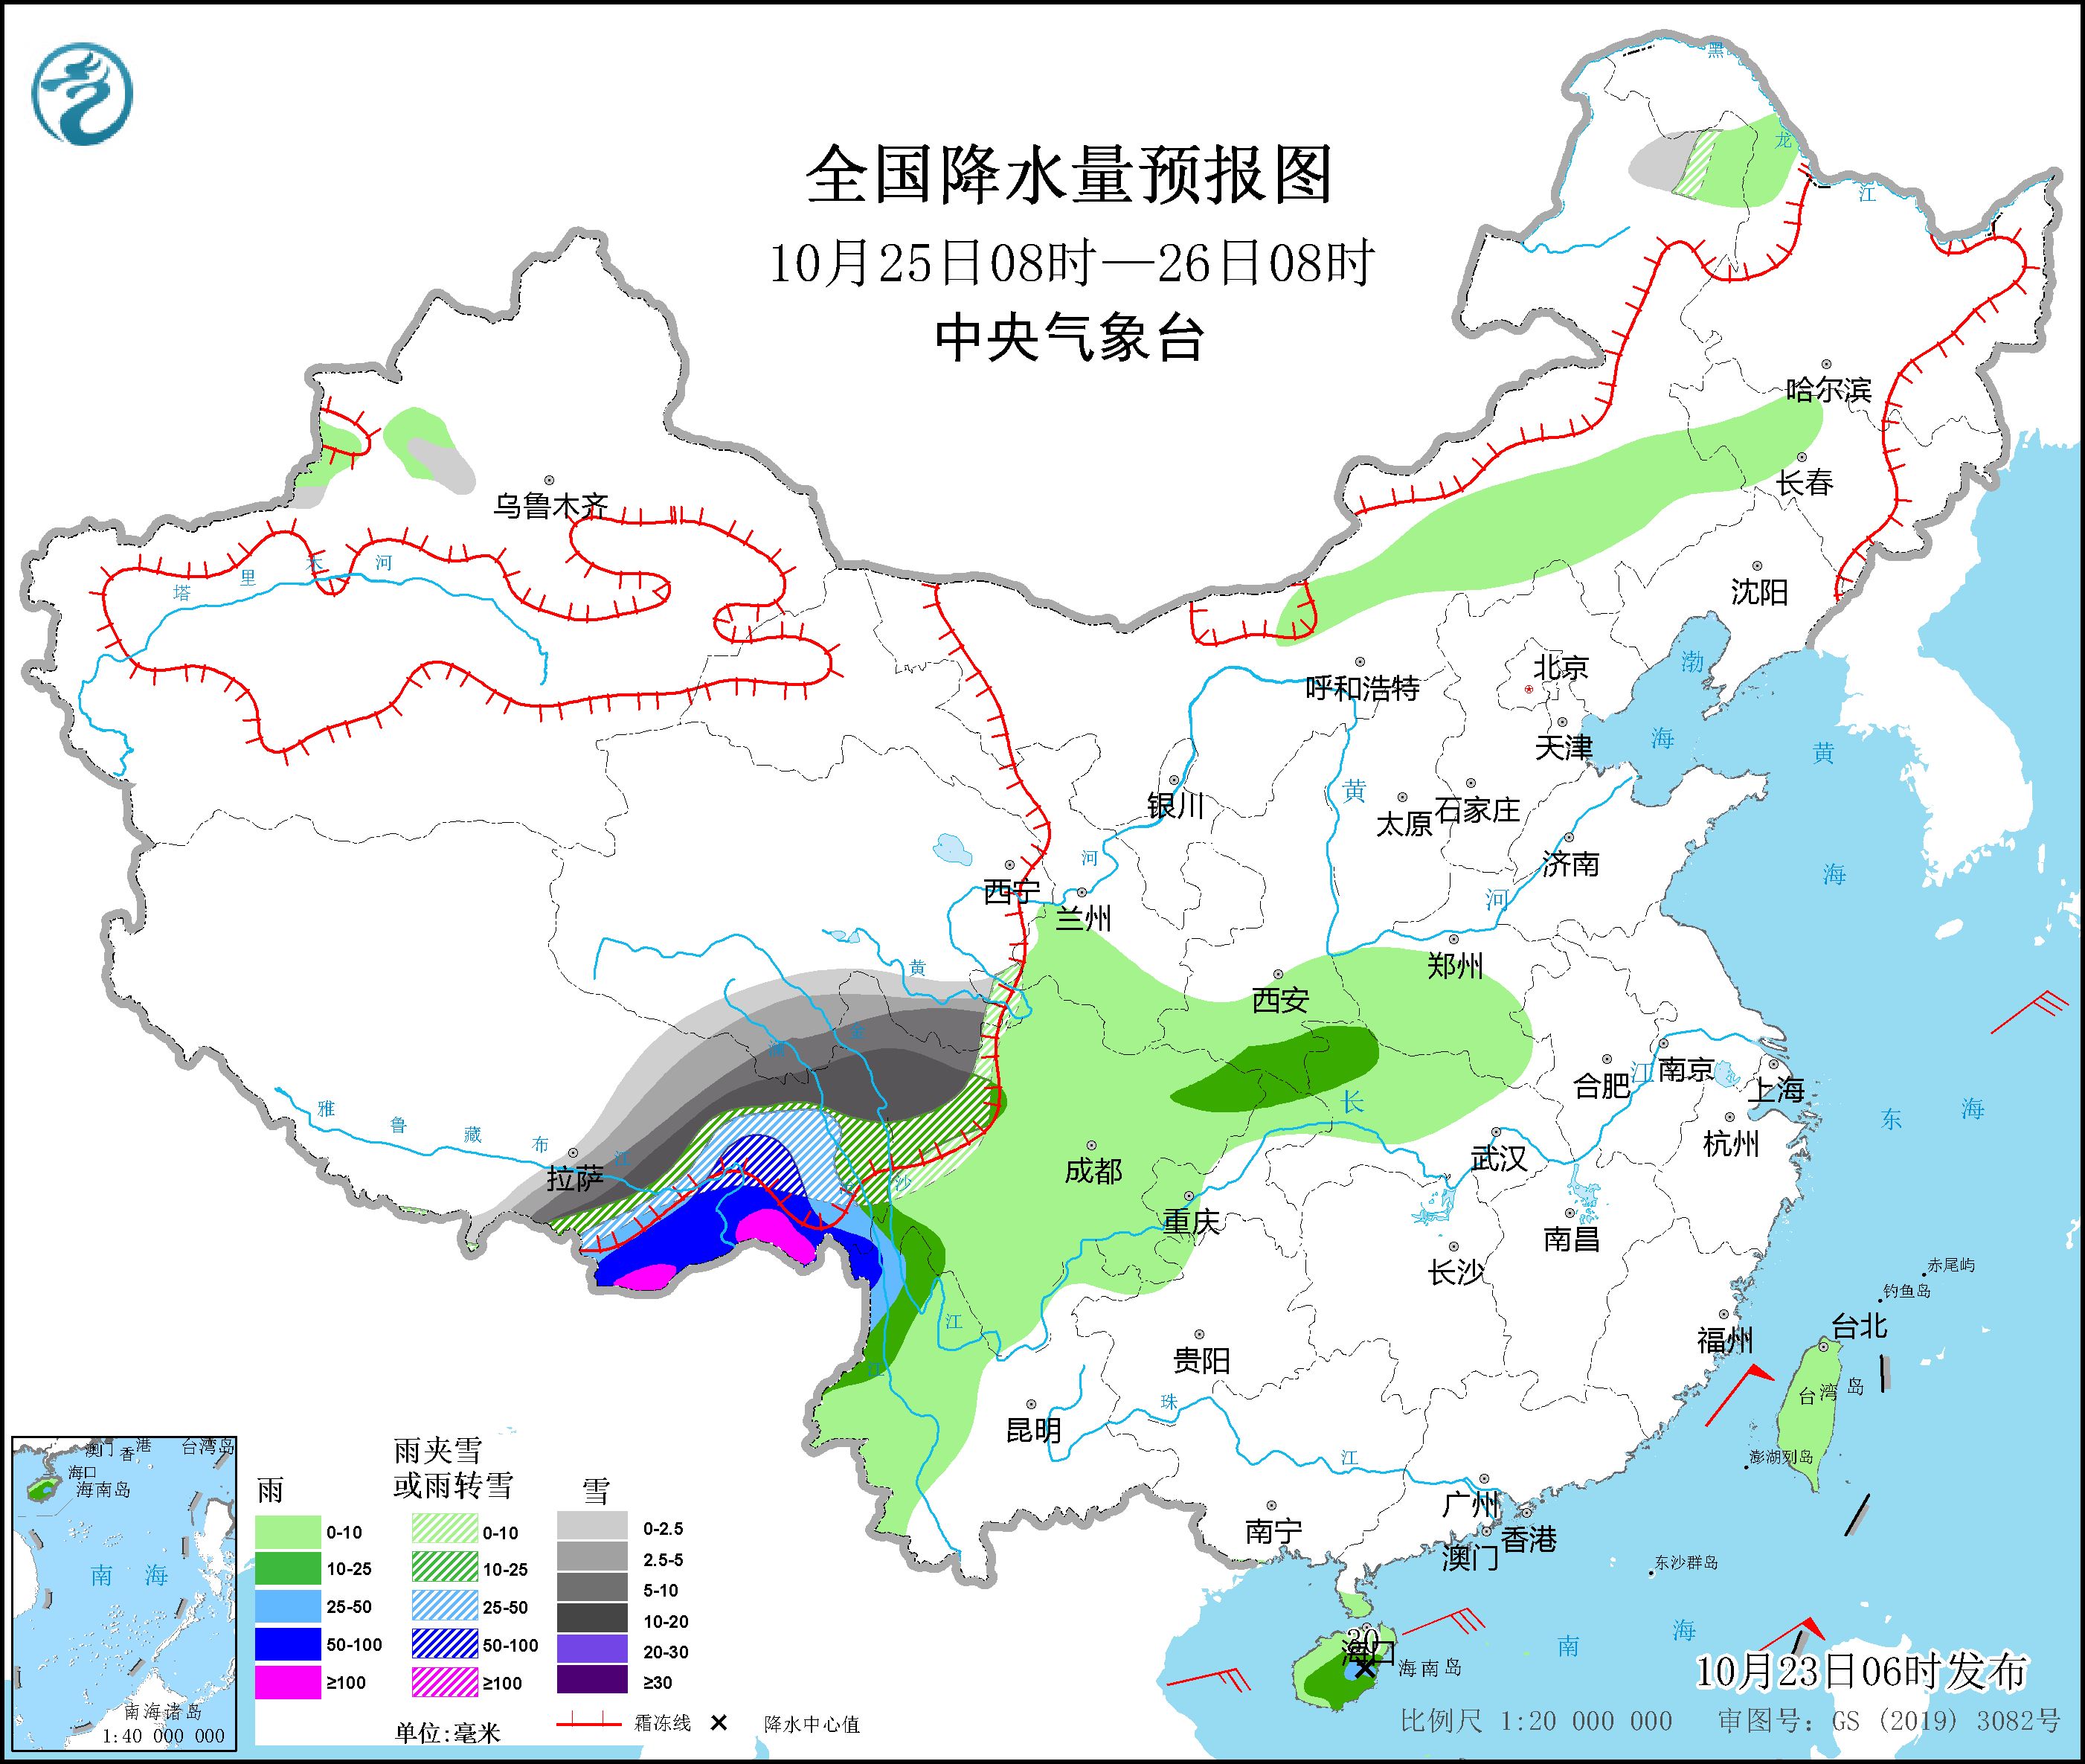 海南岛将有较强风雨天气 青藏高原东部将有较强雨雪天气